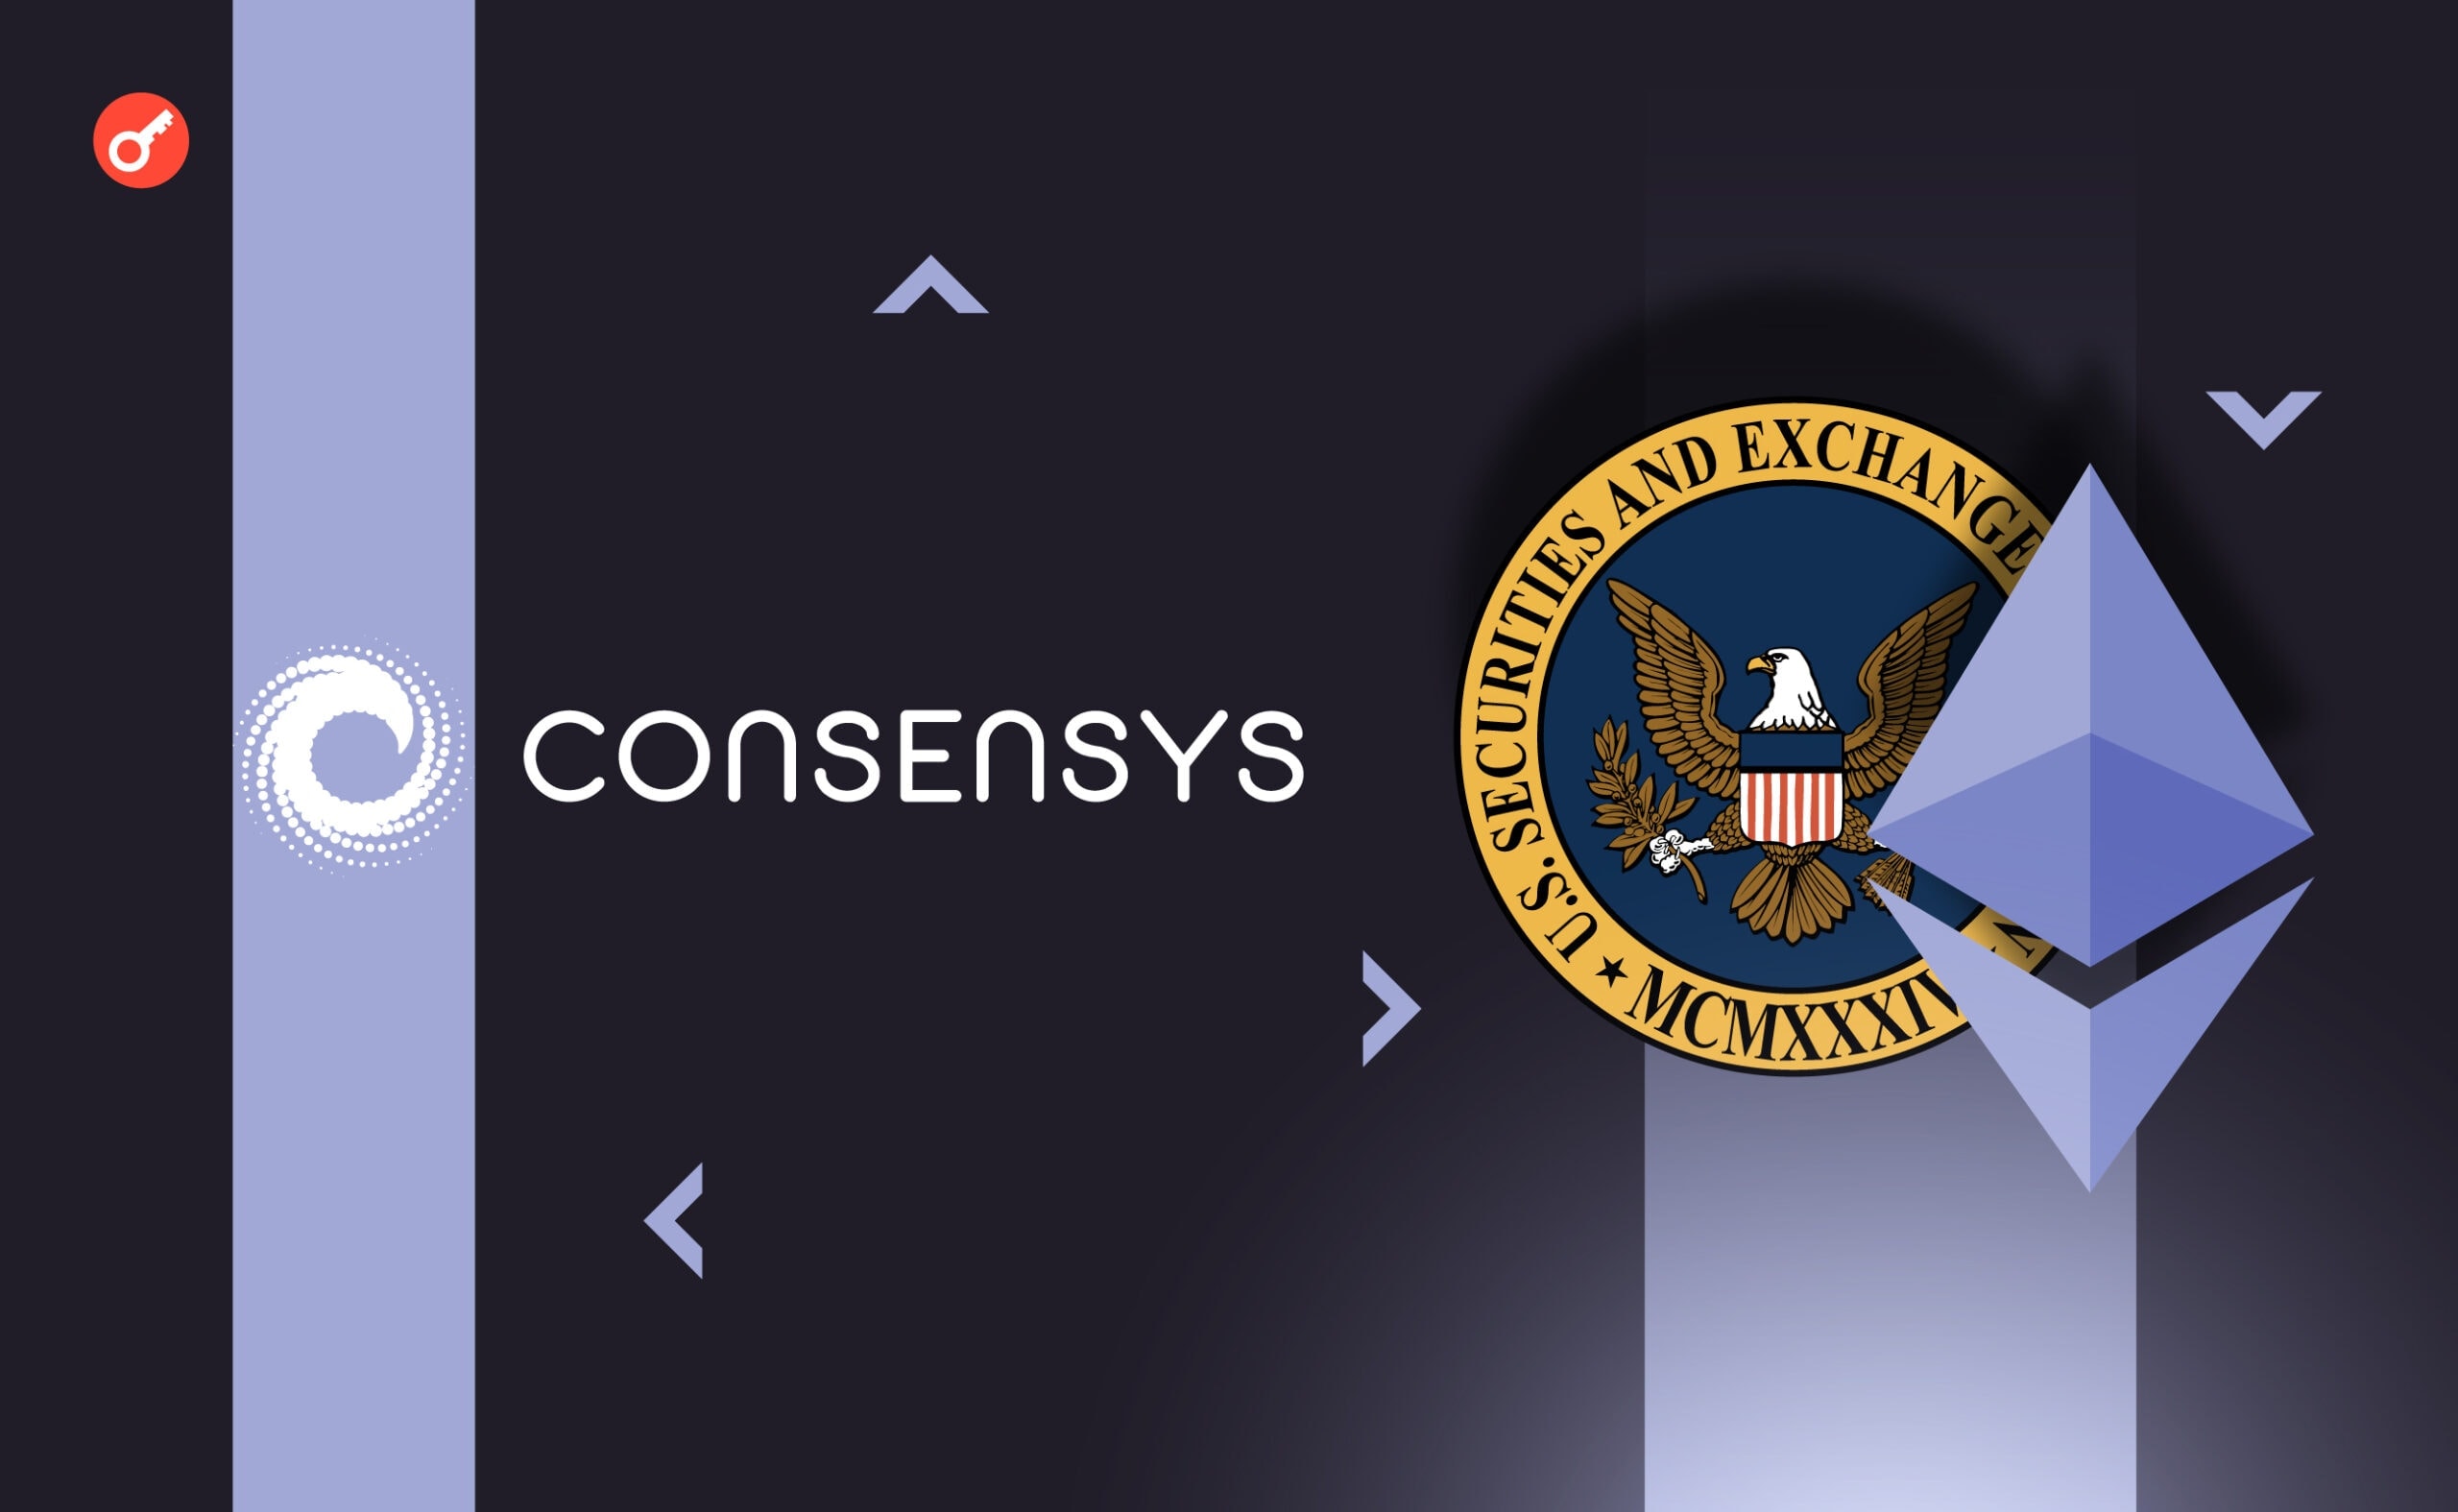 Consensys має намір продовжити судову тяганину з SEC. Головний колаж новини.